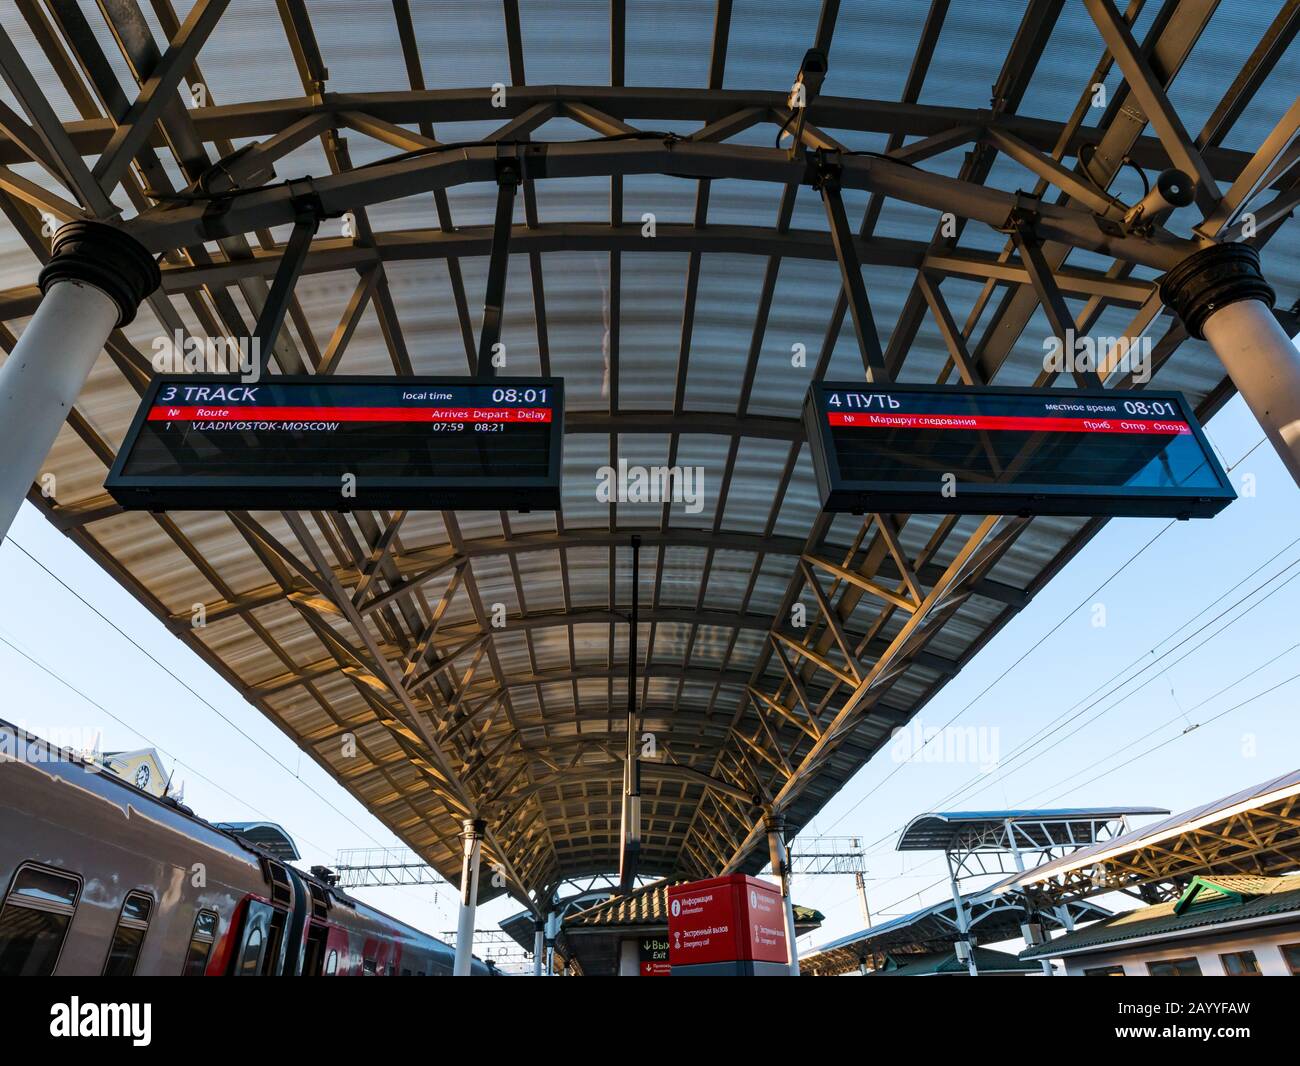 Informazioni sulla destinazione a bordo piattaforma, stazione ferroviaria di Krasnoyarsk, Trans-Siberian Railway route, Siberia, Federazione russa Foto Stock